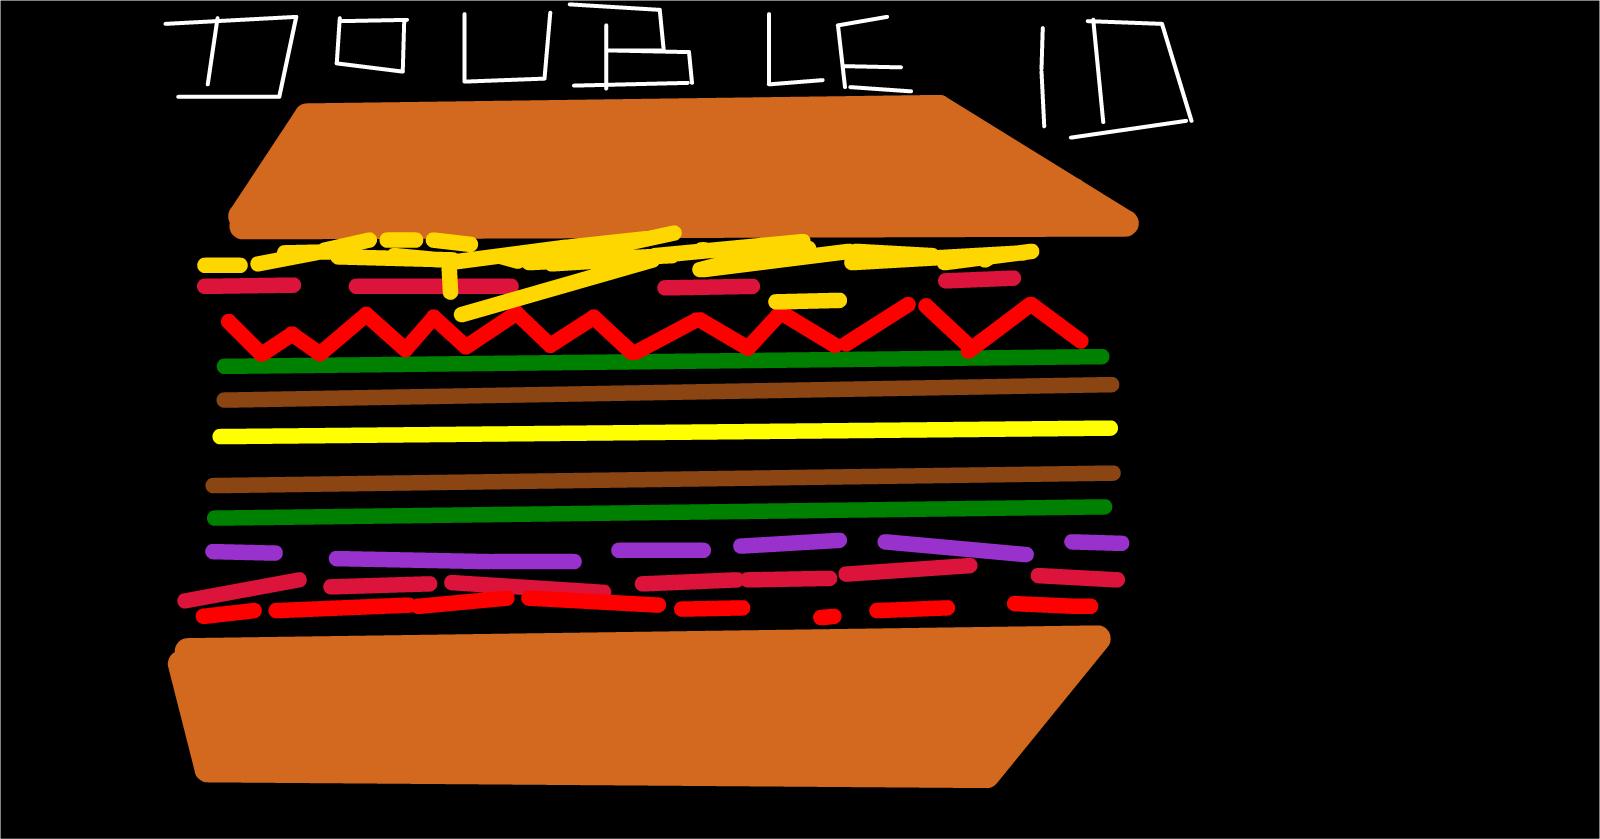 Hamburger Drawing 3: Double Cheeseburger